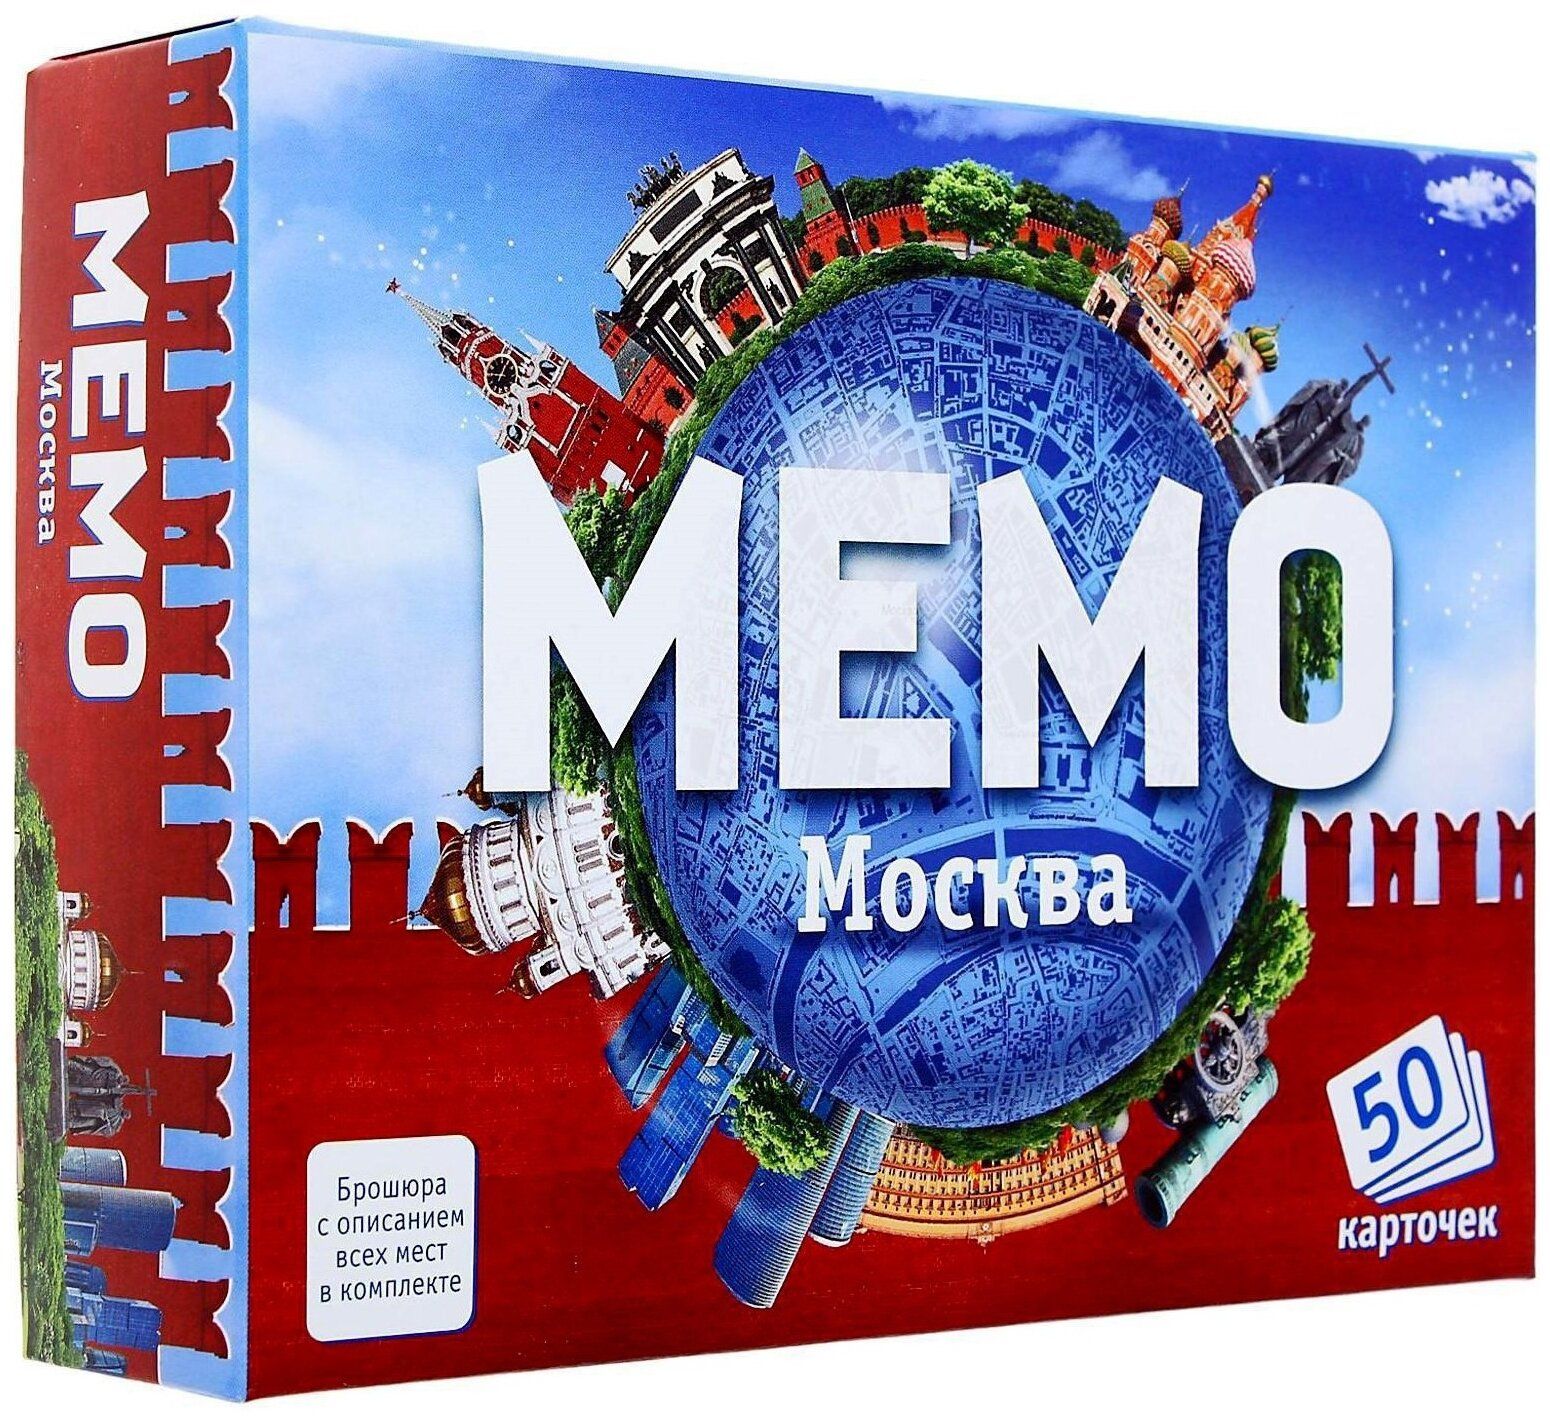 Мемо Москва арт.7205 (50 карточек) /48 настольная игра вонгамания